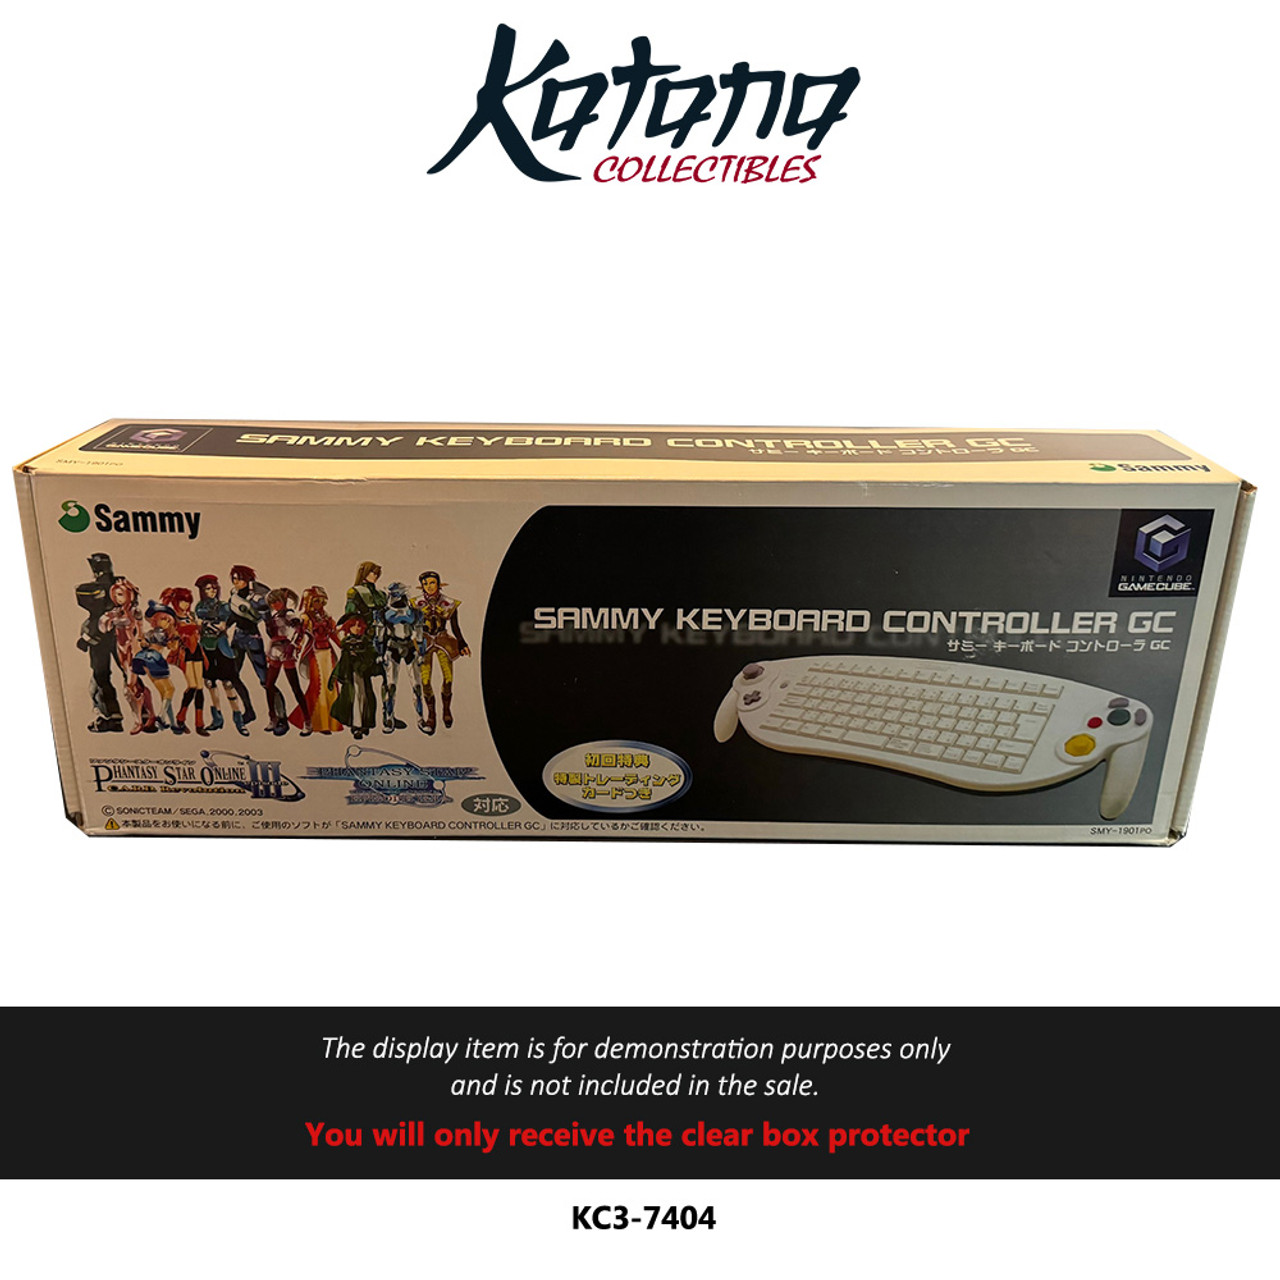 Katana Collectibles Protector For Nintendo Gamecube Sammy Keyboard Controller Phantasy Star Online Episode III